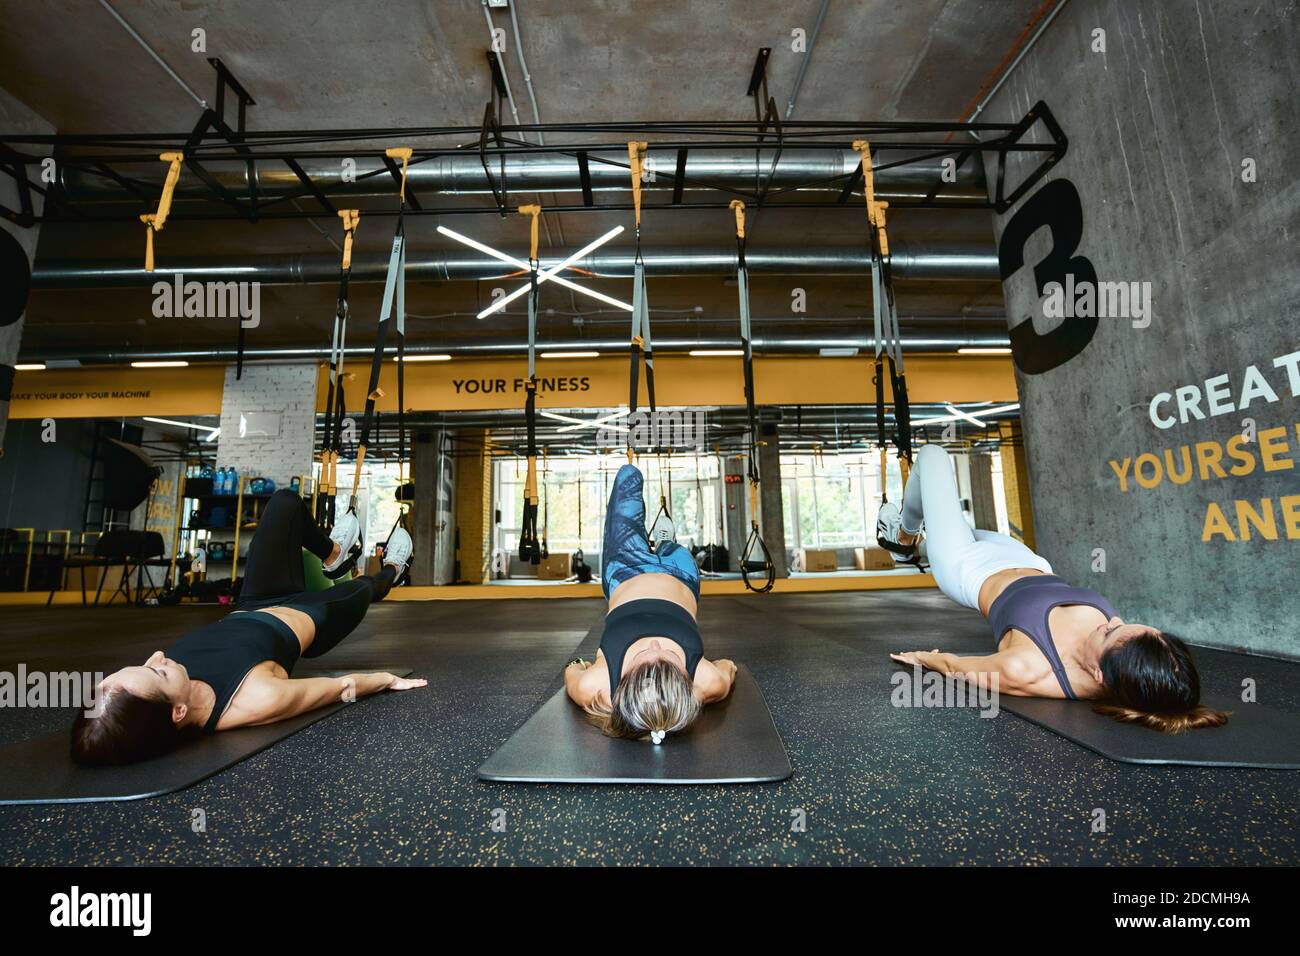 Drei junge kaukasische Sportlerinnen in Sportbekleidung liegen auf dem Boden und trainieren mit Fitness trx Gurten im Industrial oder Crossfit Gym. Sport, Menschen arbeiten, Wellness und gesunde Lebensweise Stockfoto